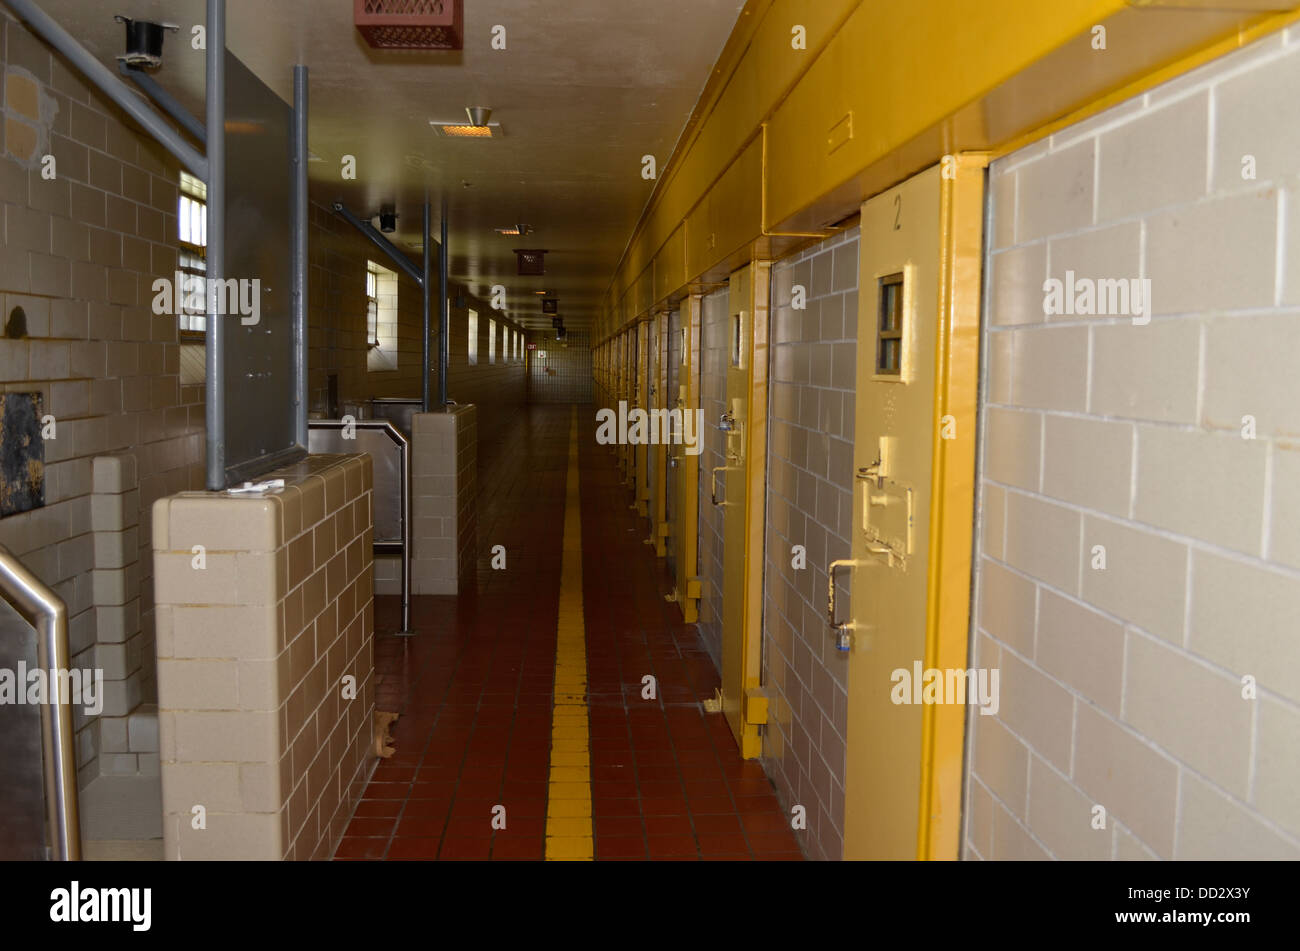 Unidad de manejo especial en la Penitenciaría del Estado de Nebraska. Los reclusos se celebran aquí sobre el régimen de incomunicación y aislamiento. Foto de stock